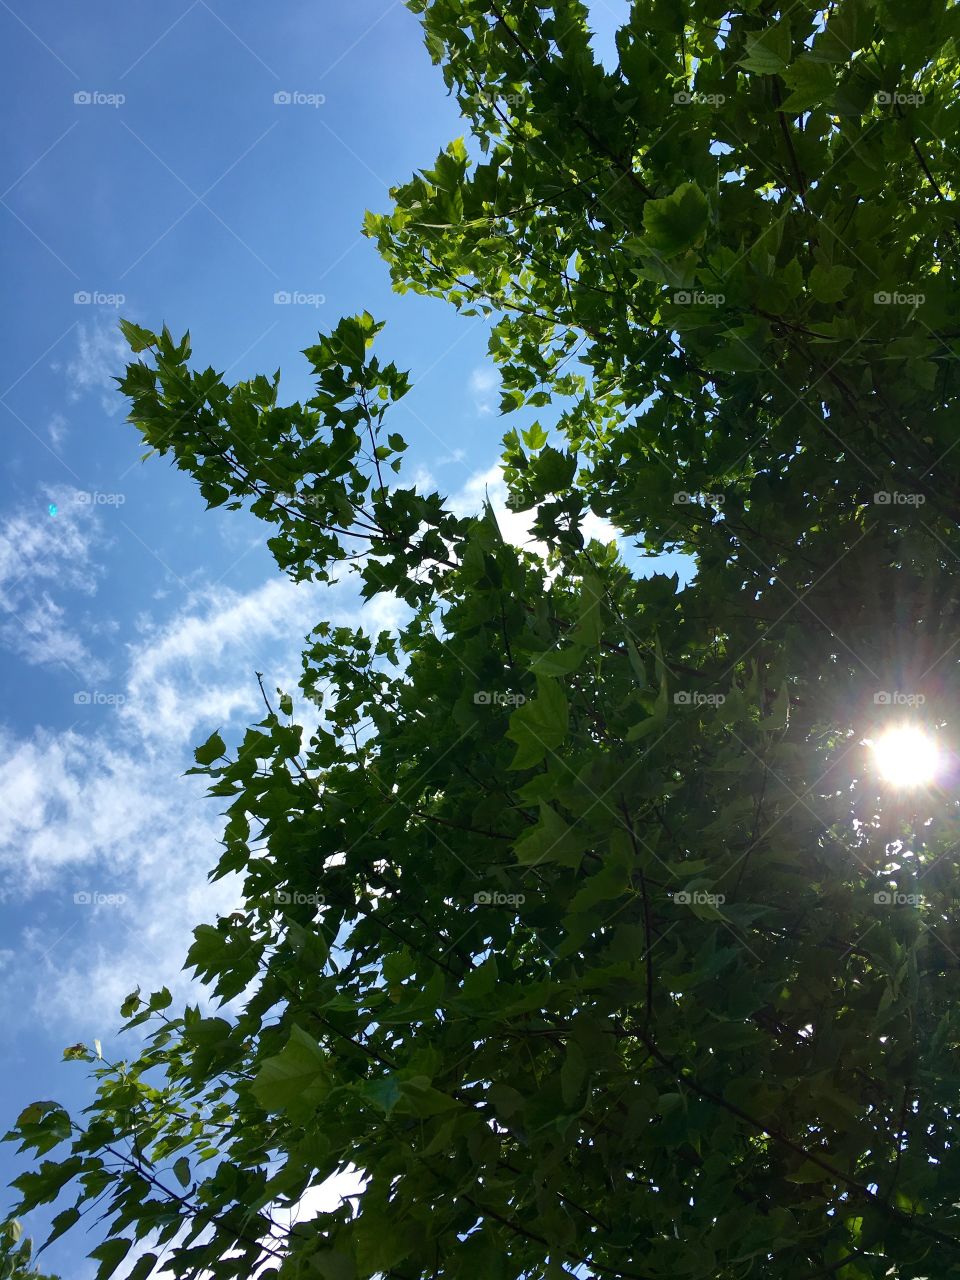 Sun in the tree